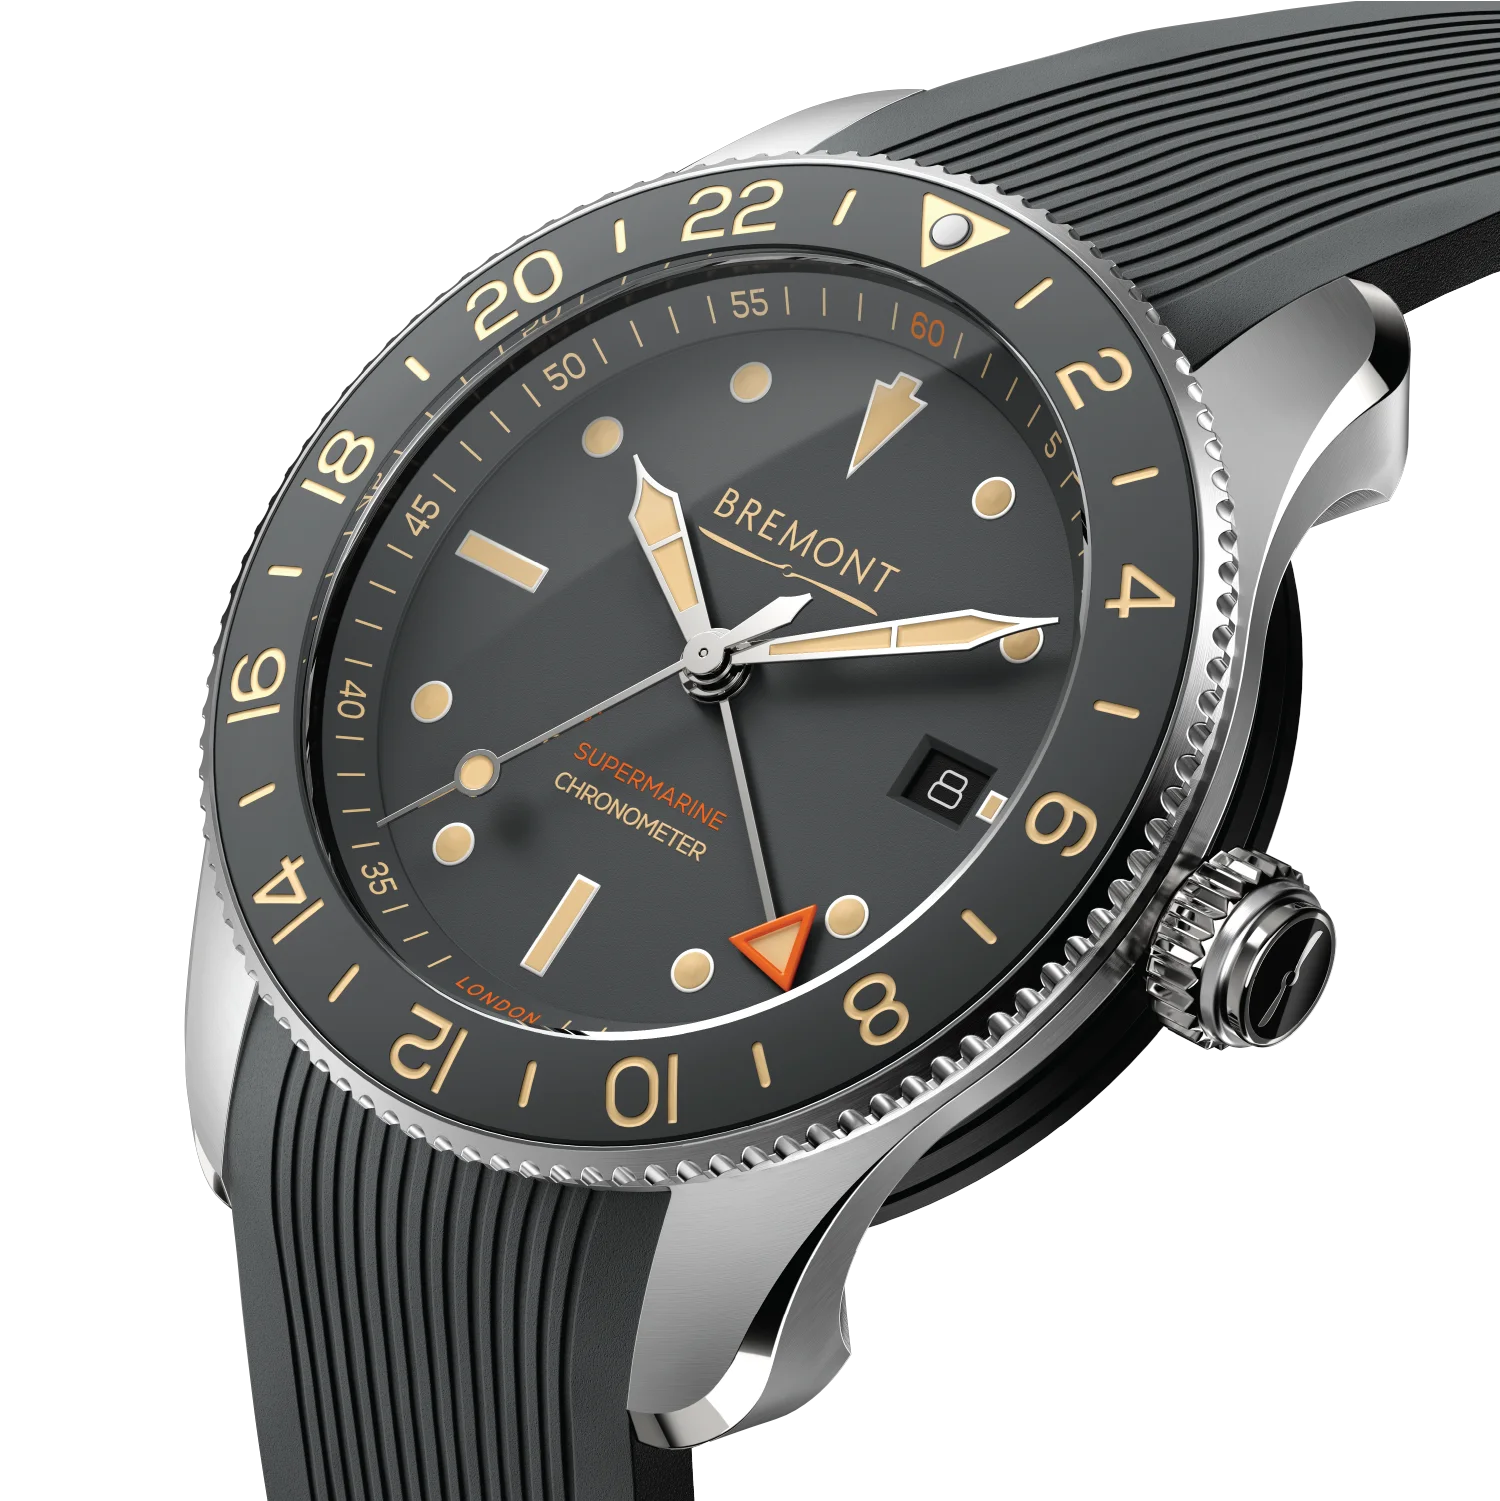 Bremont Supermarine Ocean watch collection